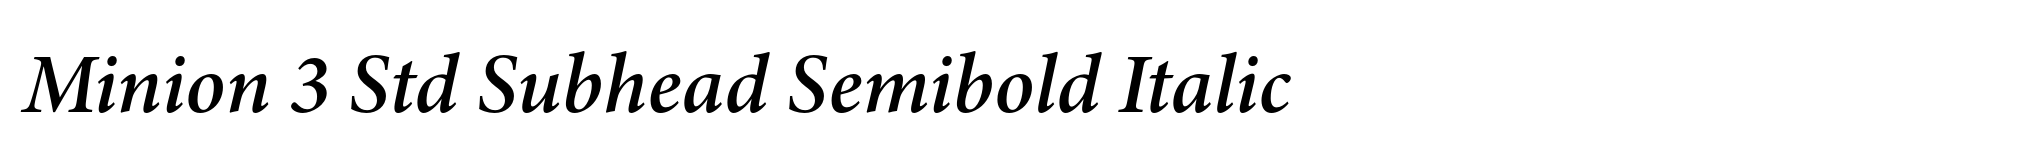 Minion 3 Std Subhead Semibold Italic image